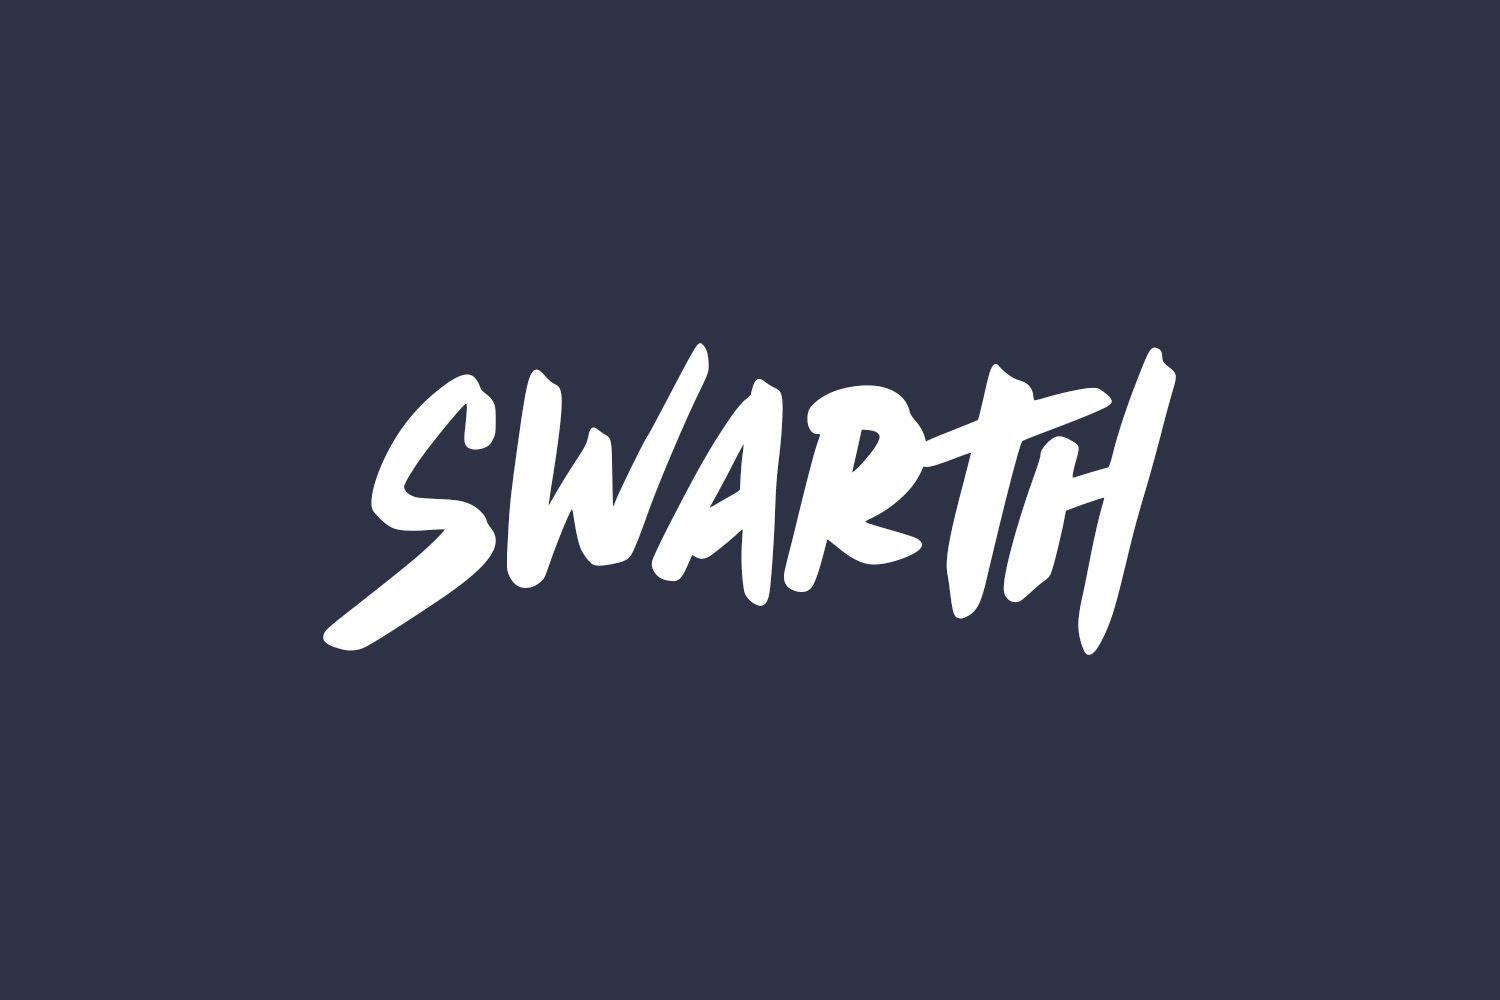 Swarth Free Font